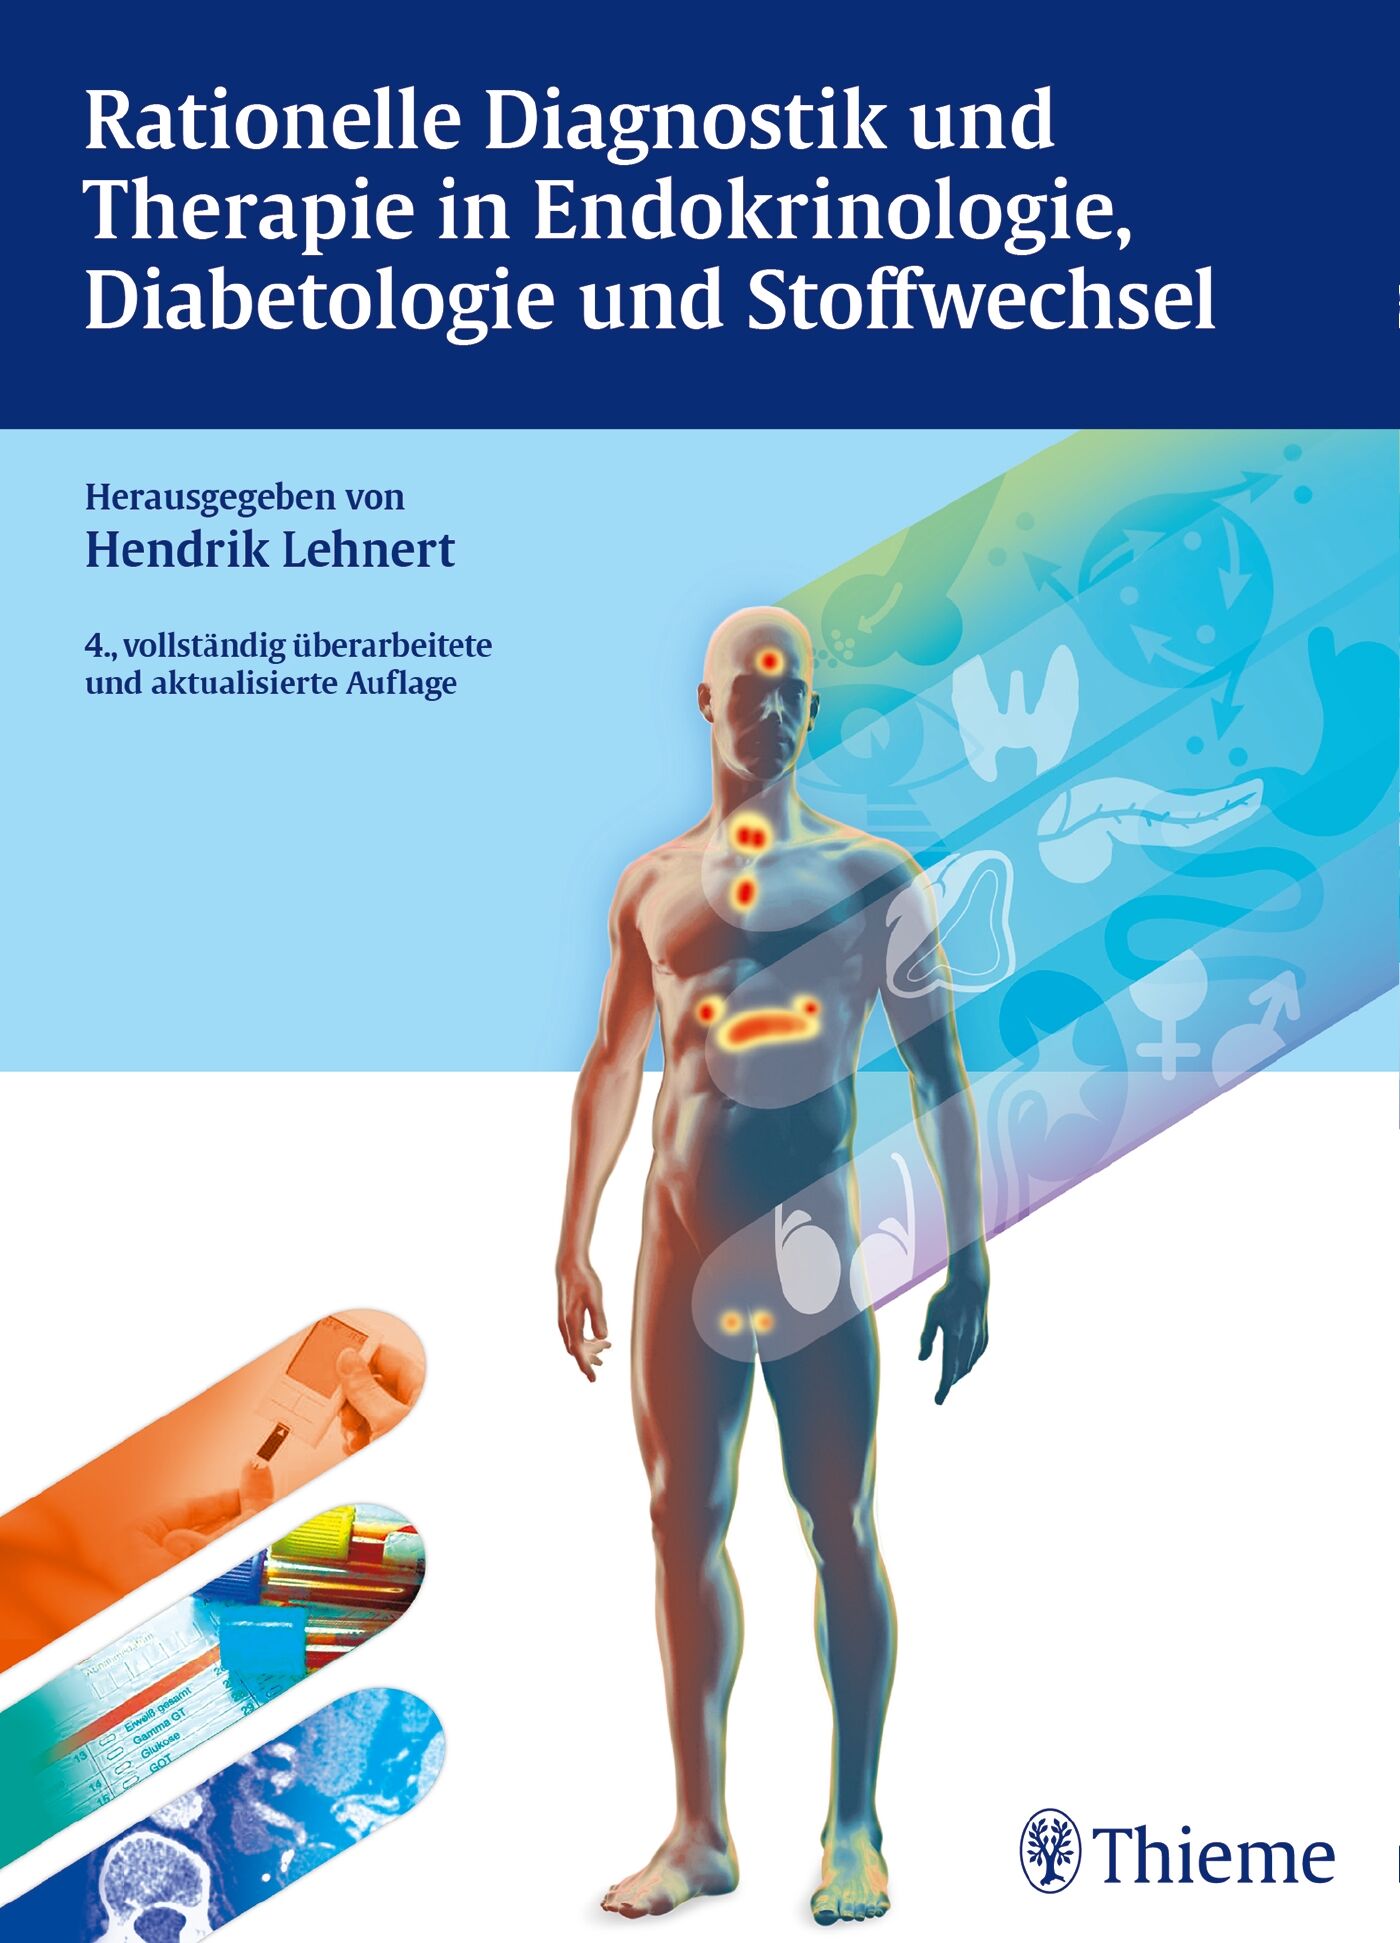 Rationelle Diagnostik und Therapie in Endokrinologie, Diabetologie und Stoffwech, 9783131573742